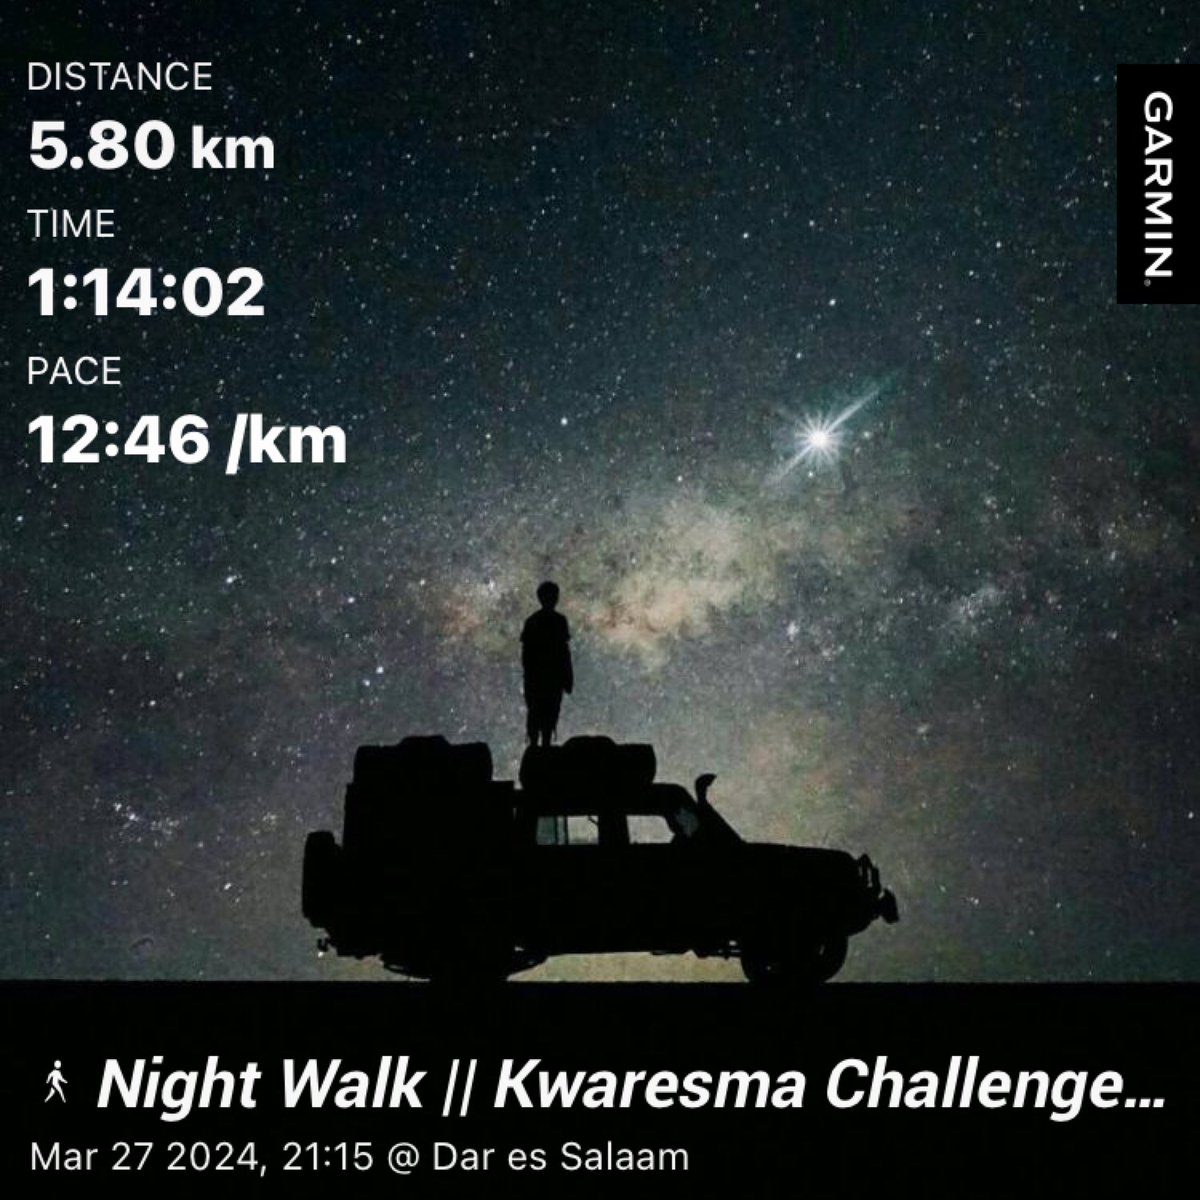 Kwaresma Challenge Day 37
Night Walk
#RunningWithTumiSole
#FetchYourBody2023 
#IChoose2BActive 
#SkhindiGang 
#RunningYogi 
#TrapnLos
#ThandyMWellness